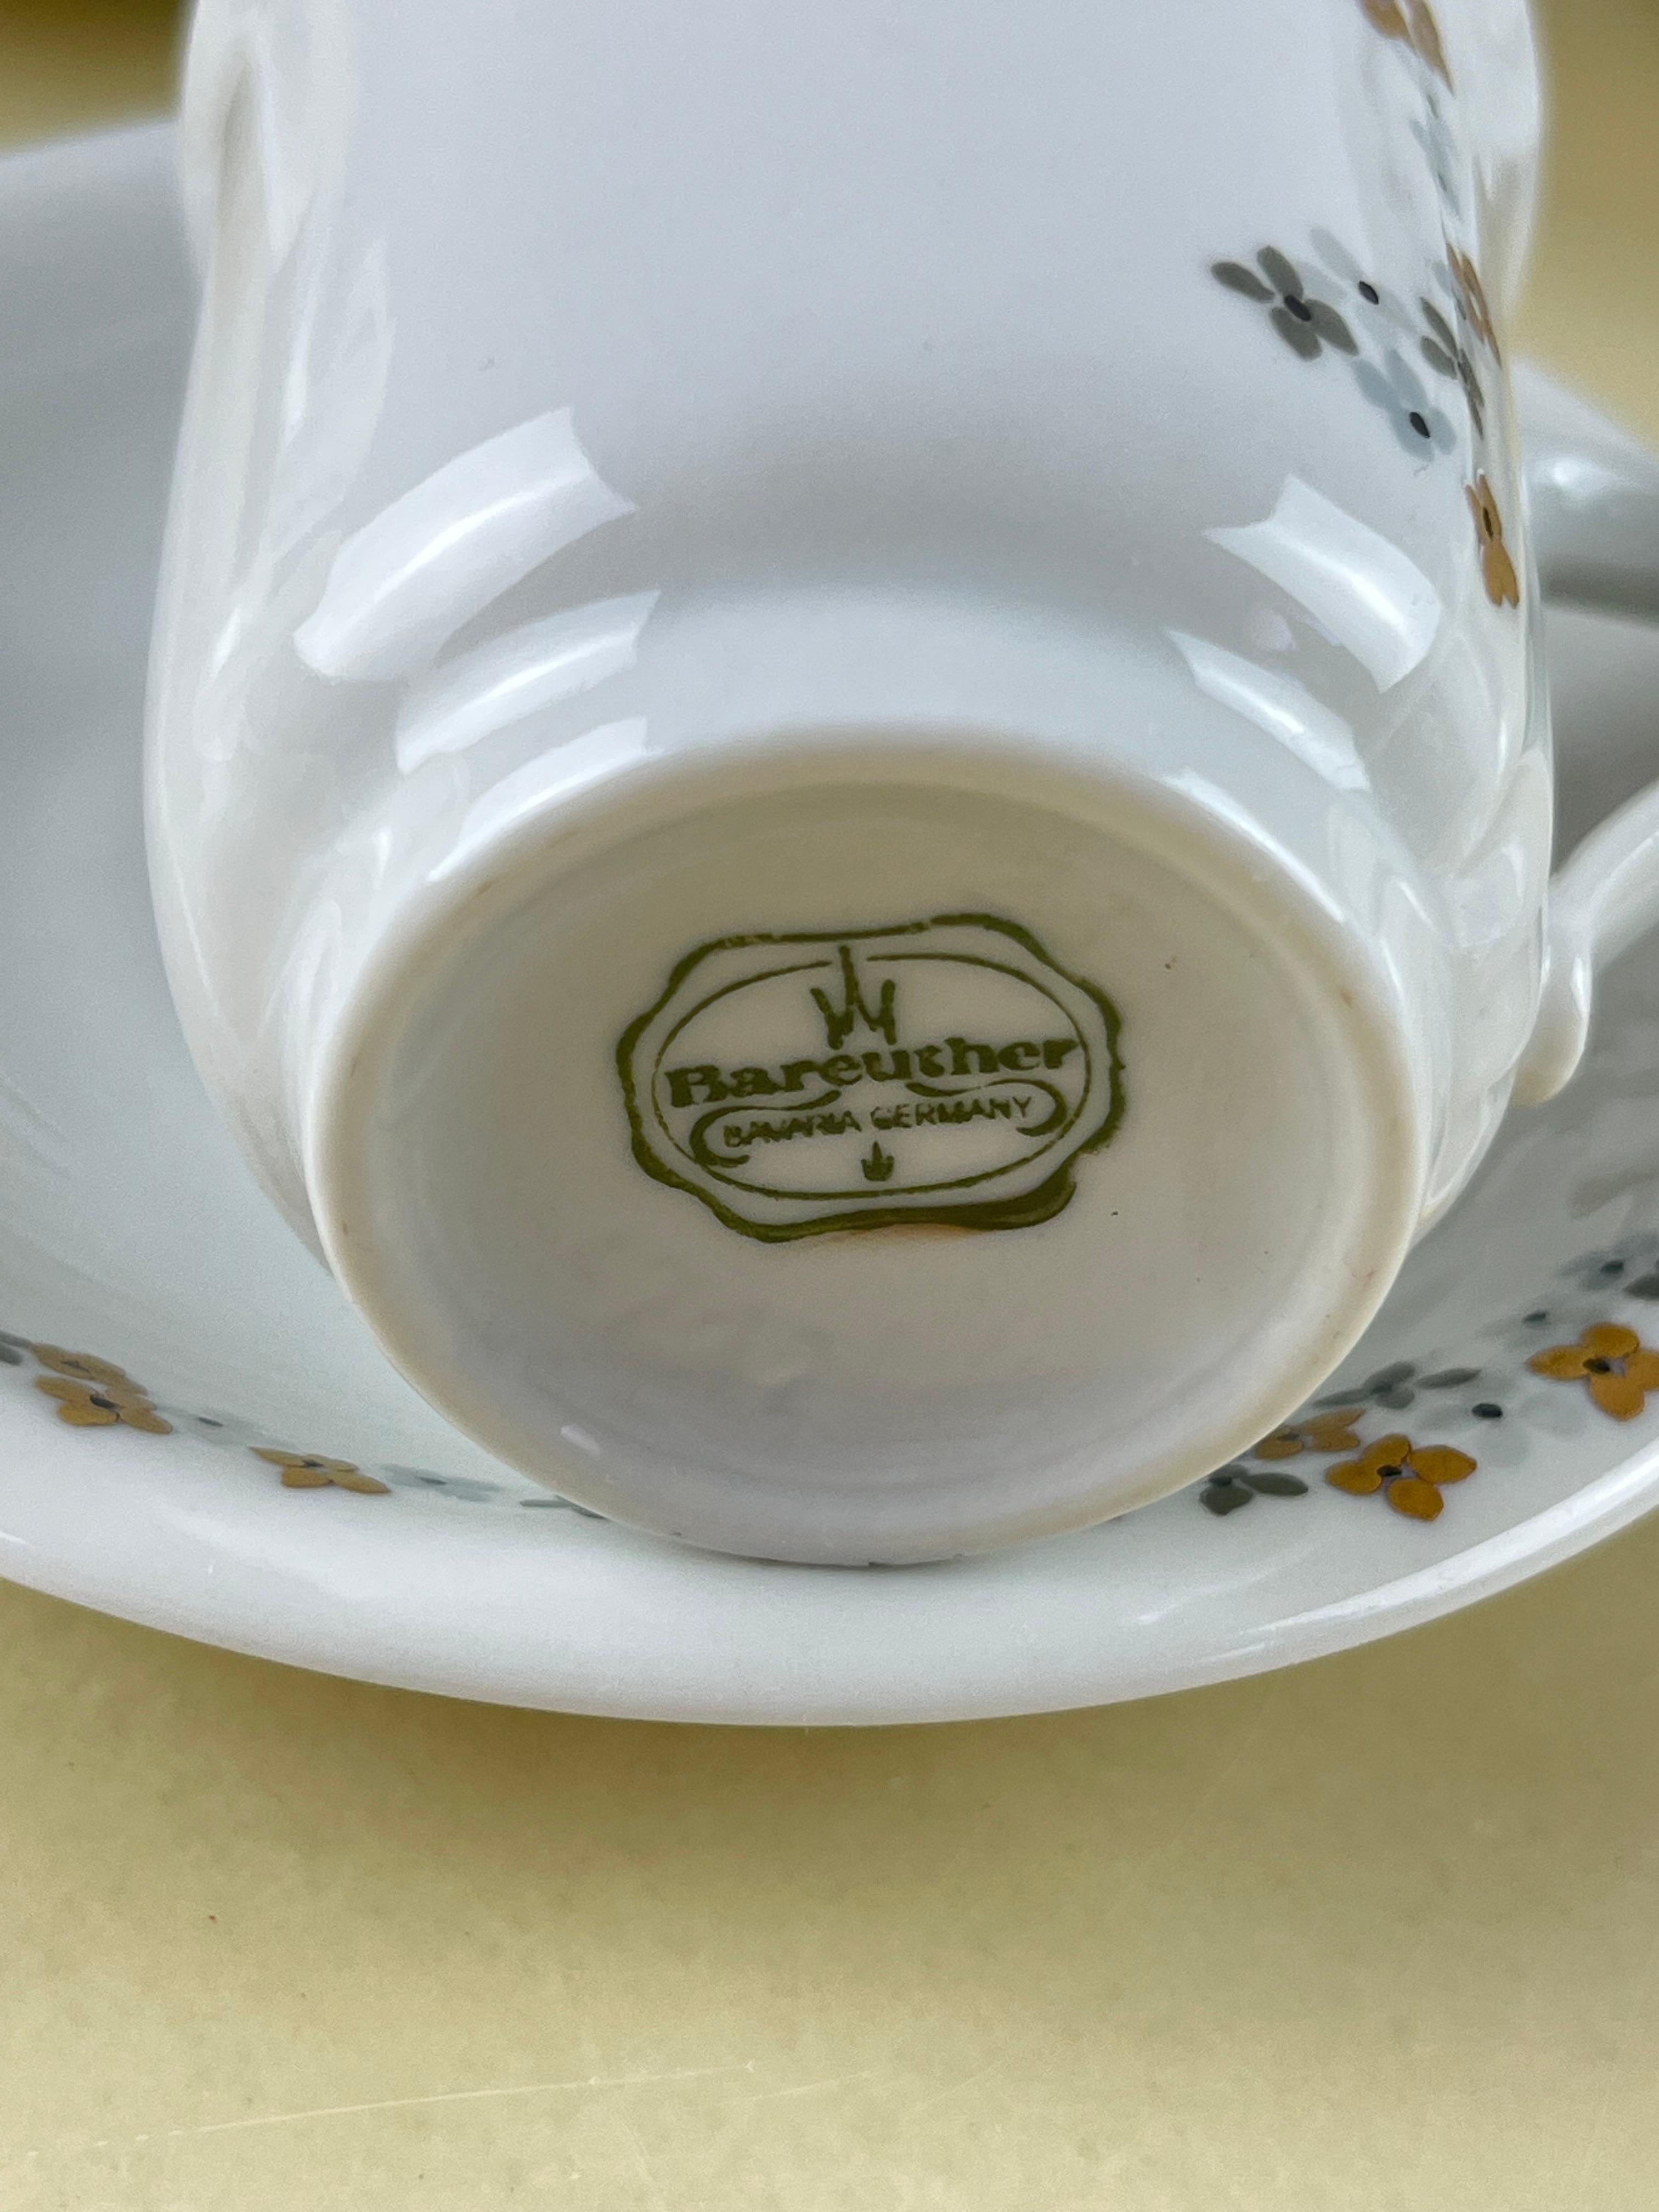 
Service à café Bareuther Bavaria, fabriqué en Allemagne, années 1980
Comprend 10 tasses et soucoupes, une cafetière, un pot à lait et un sucrier. Jamais utilisé.
Les mesures se rapportent à la cafetière.